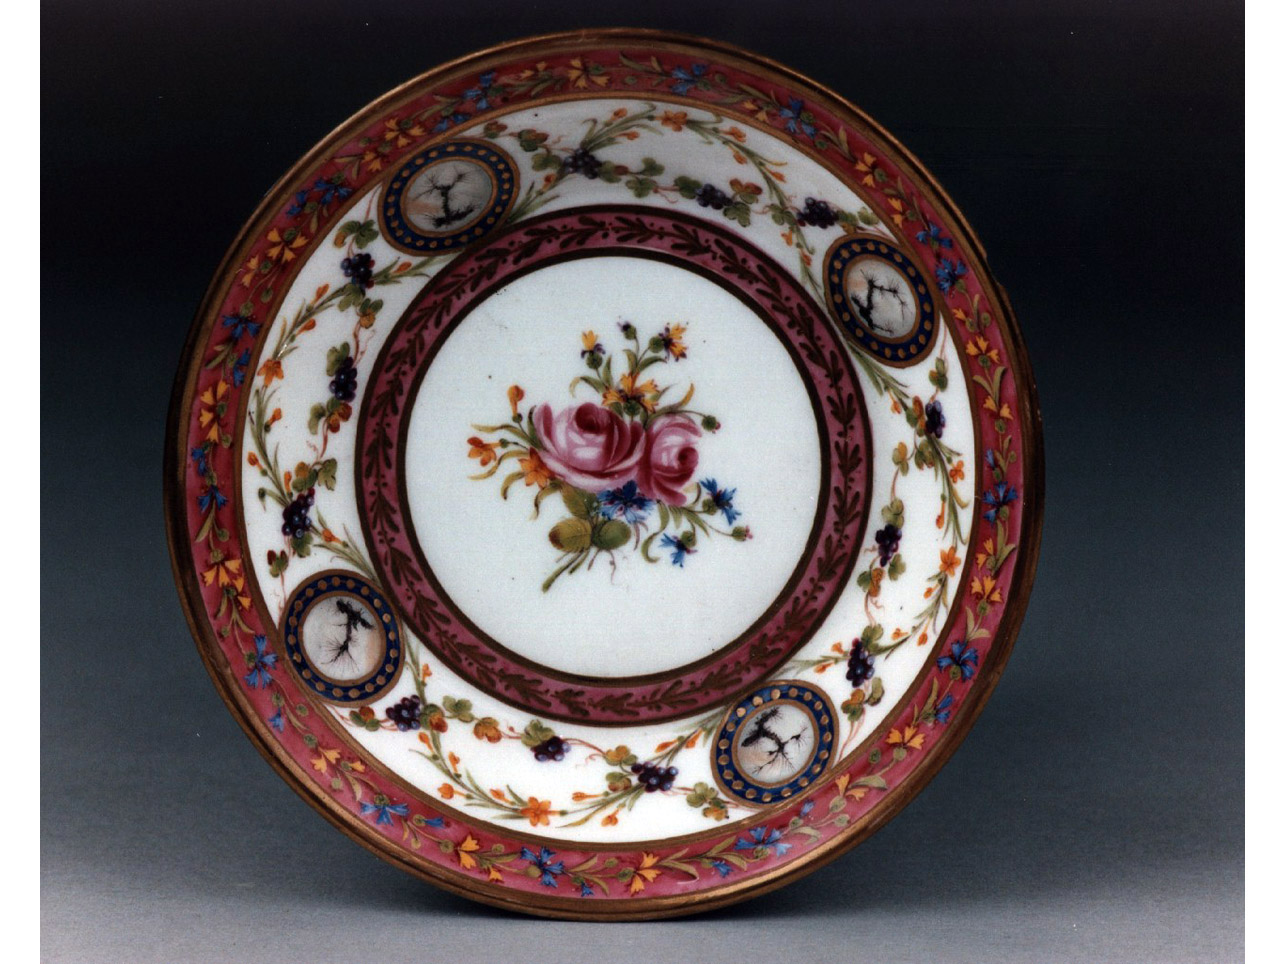 motivi decorativi floreali (servizio da colazione, insieme) - manifattura di Sèvres (sec. XVIII)